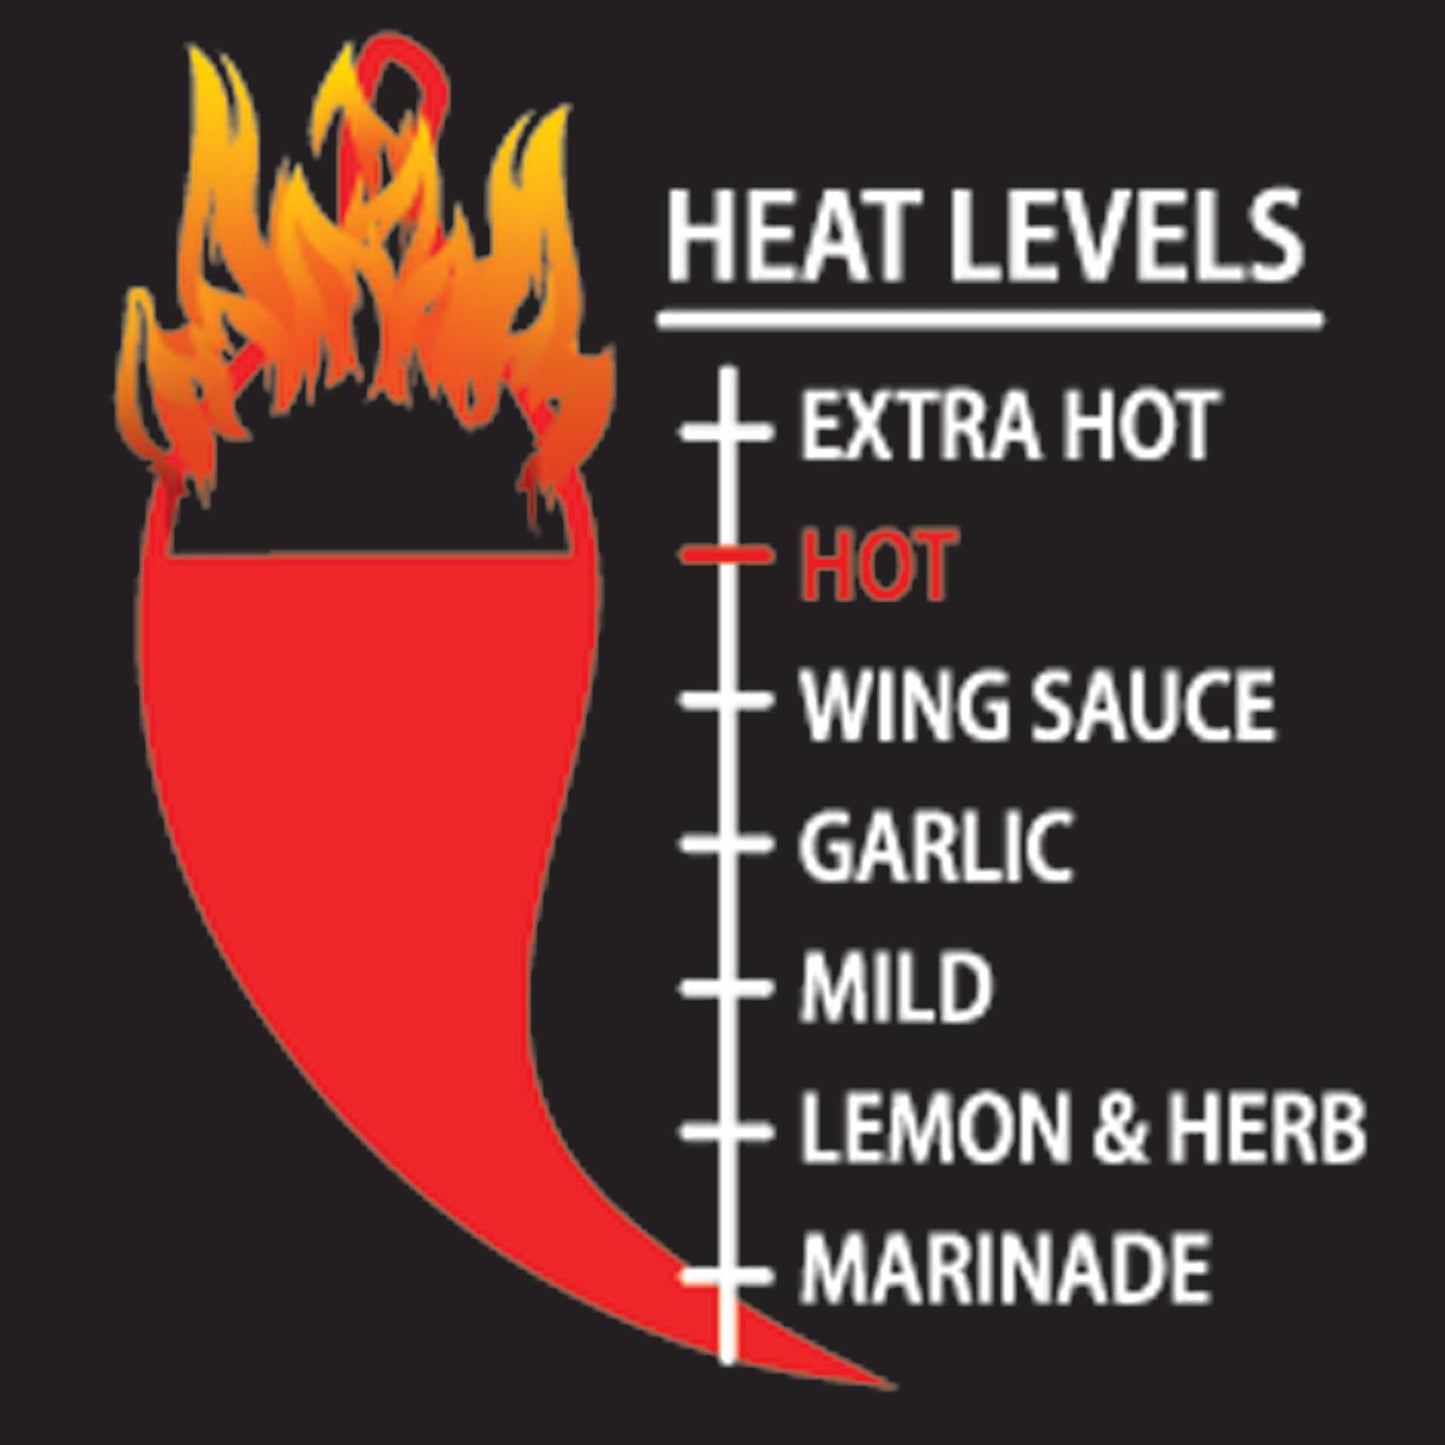 Hot Peri Peri Sauce Heat Meter - 6 out of 7